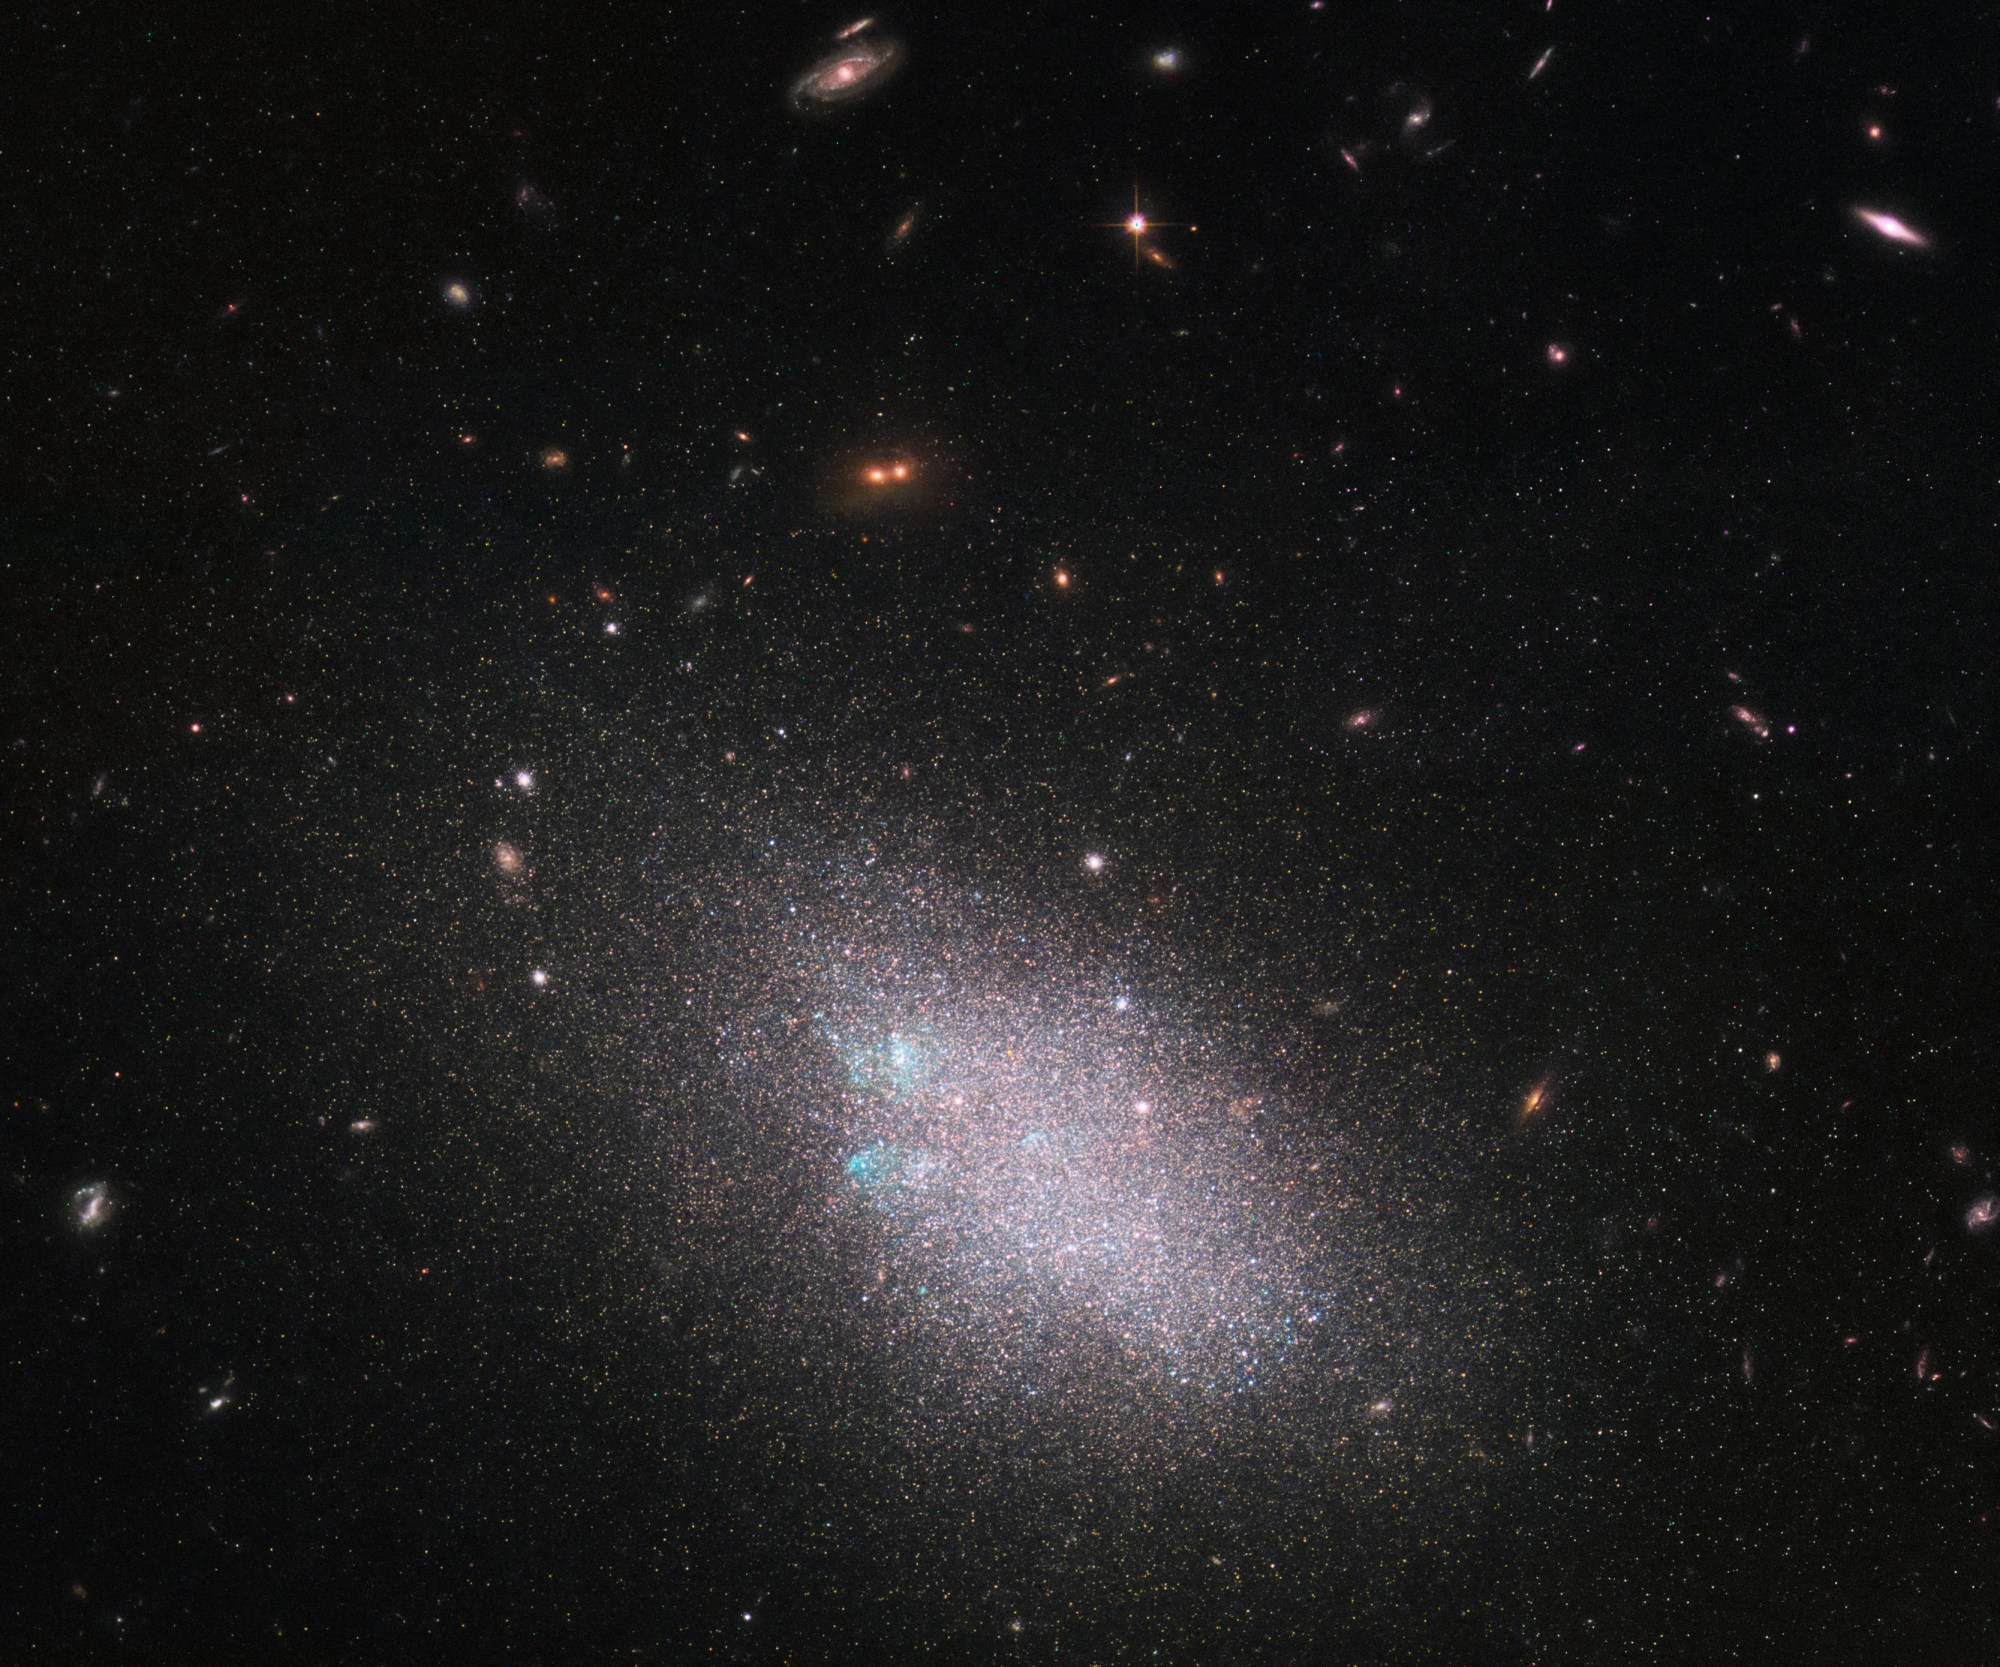 Dwarf galaxy named ugc 685